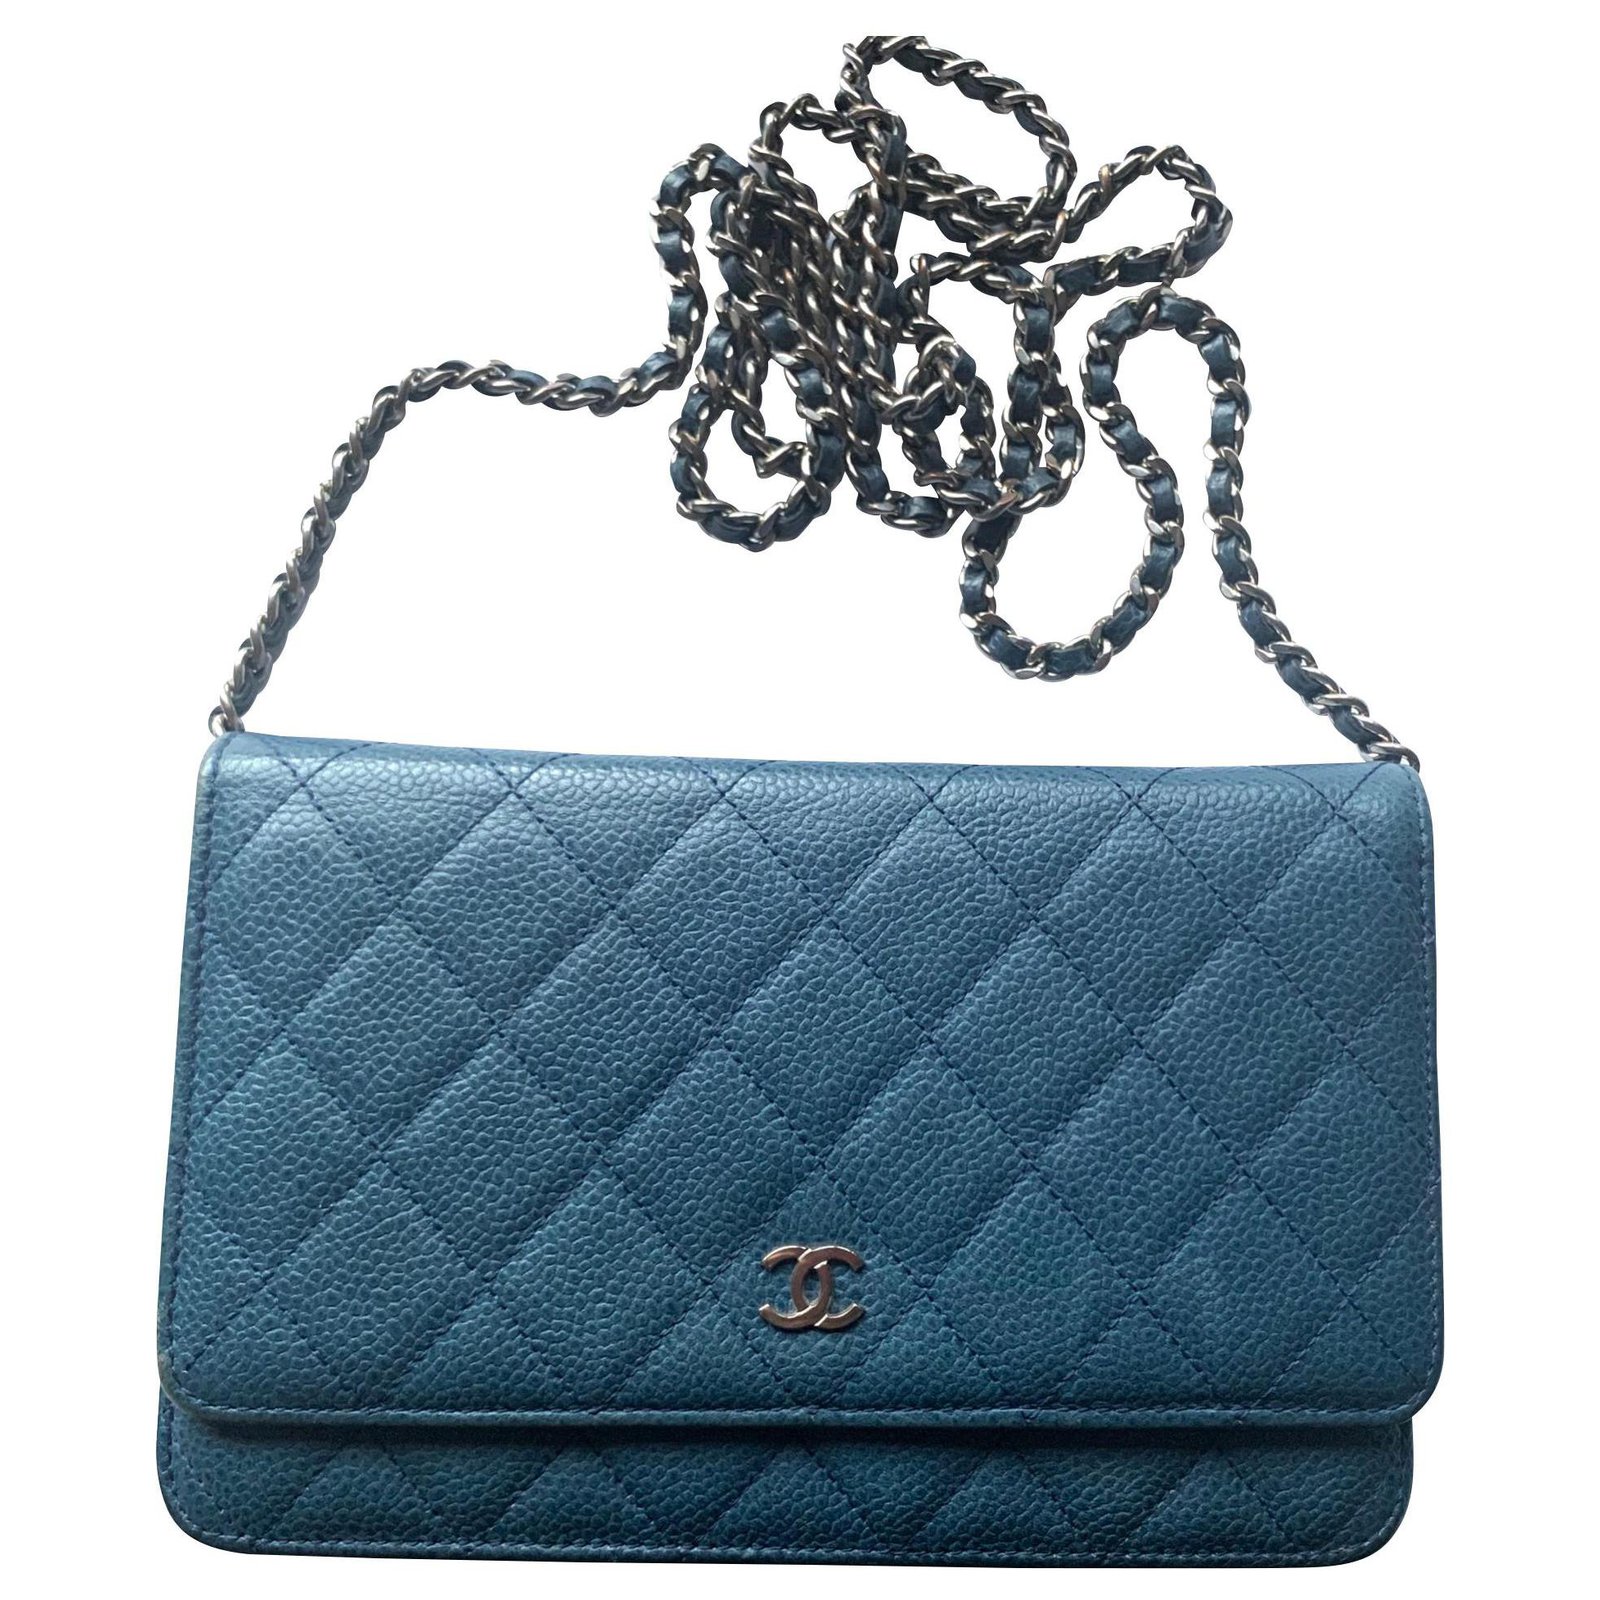 blue leather purse